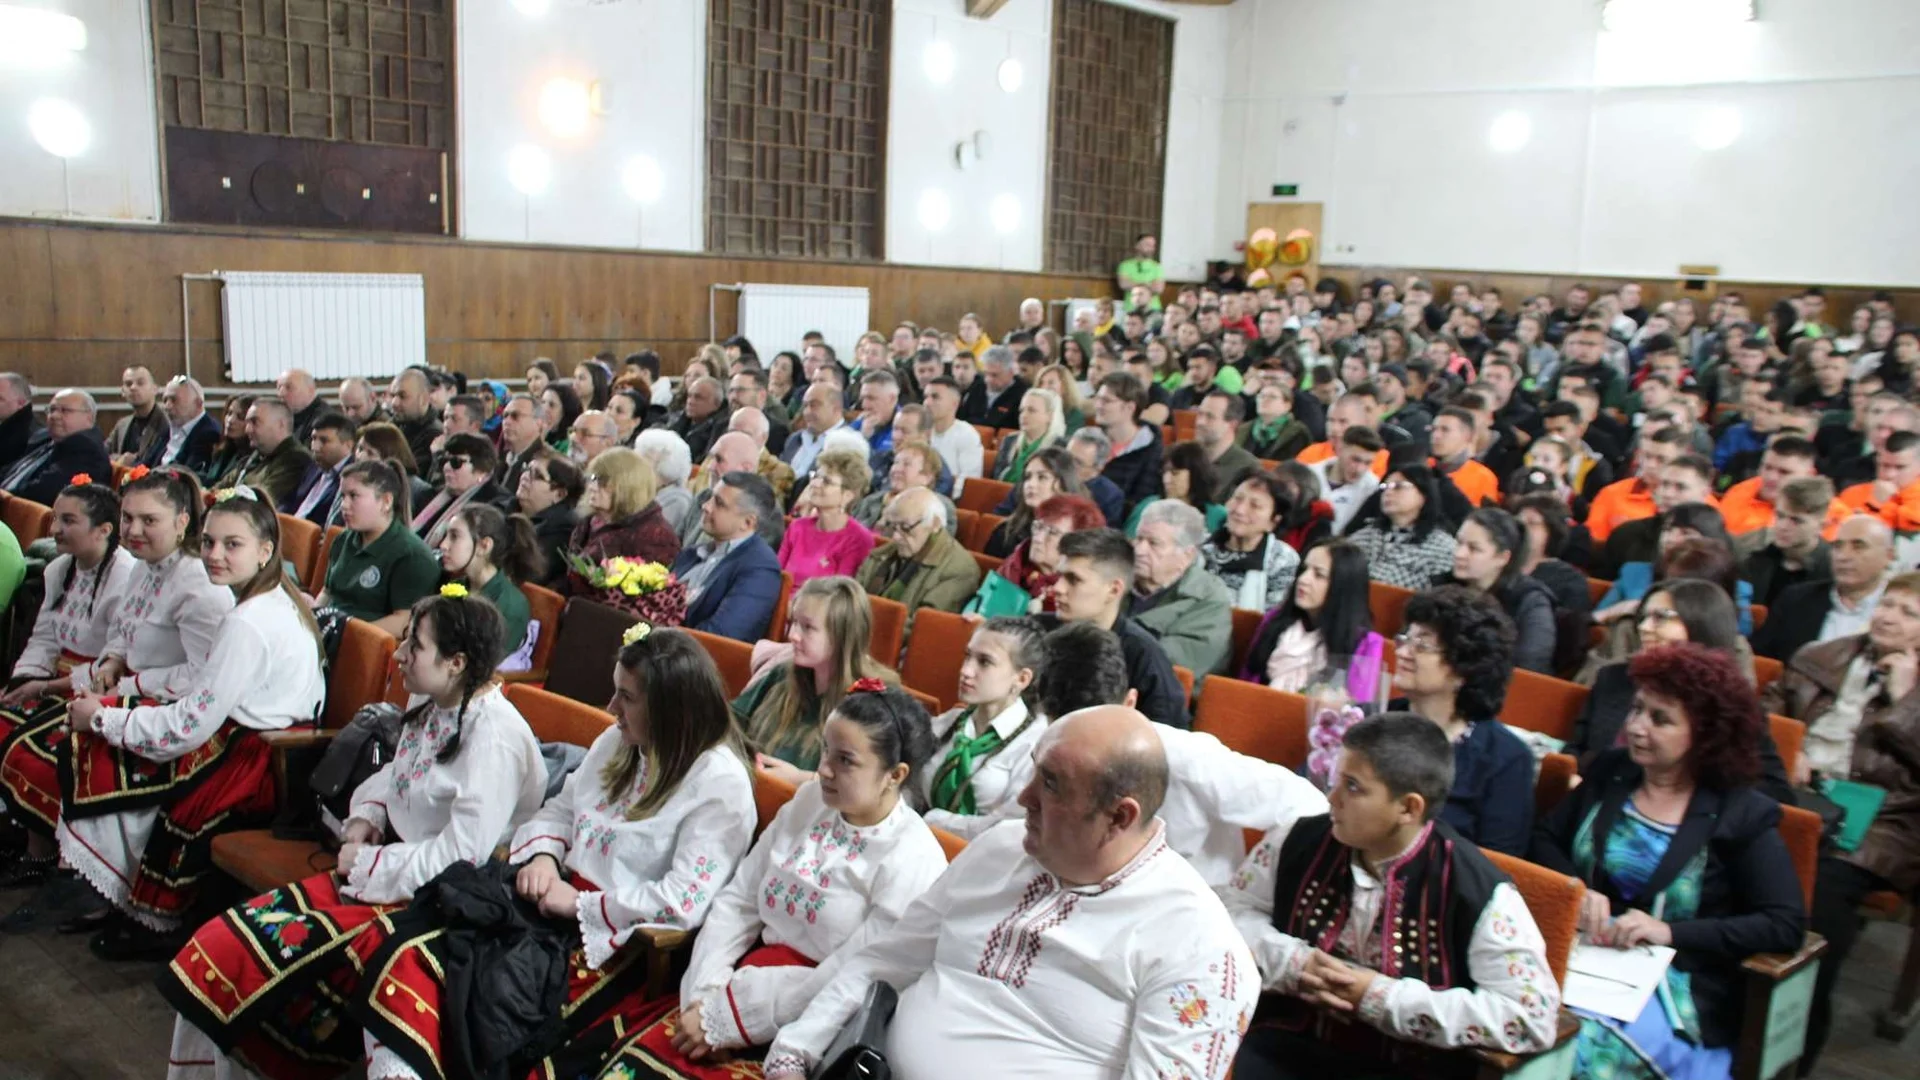 Училището „Сава Младенов“ в Тетевен отбеляза 115-та си годишнина (СНИМКИ)